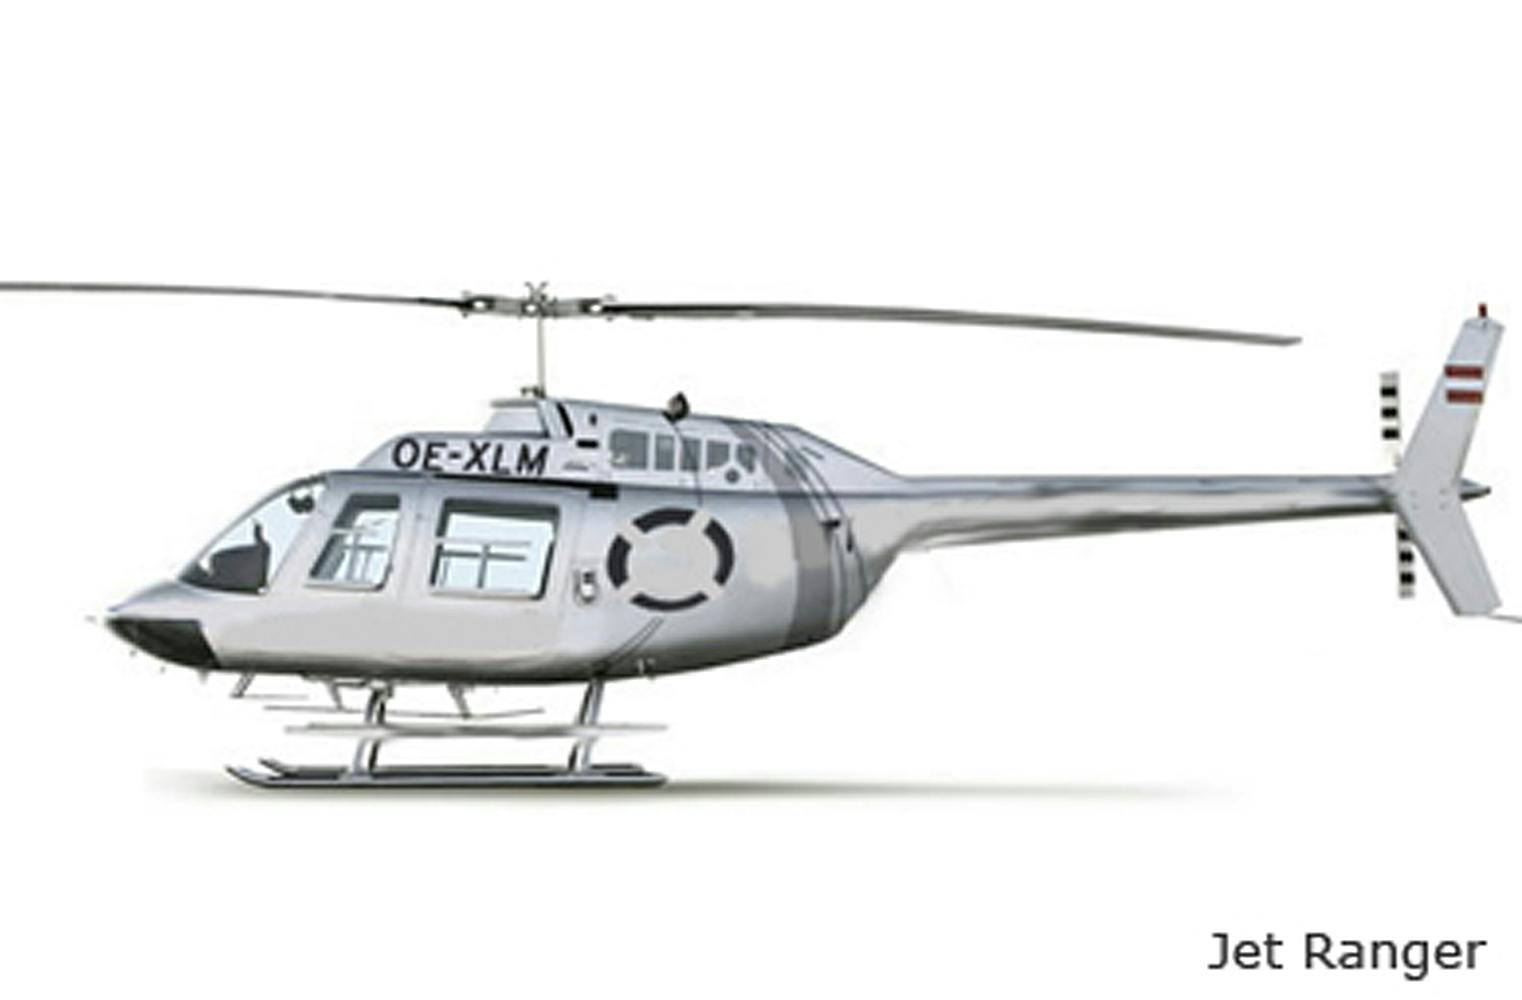 Helicopterrundflug | Hughes 300 oder Jet Ranger | 20 Min.